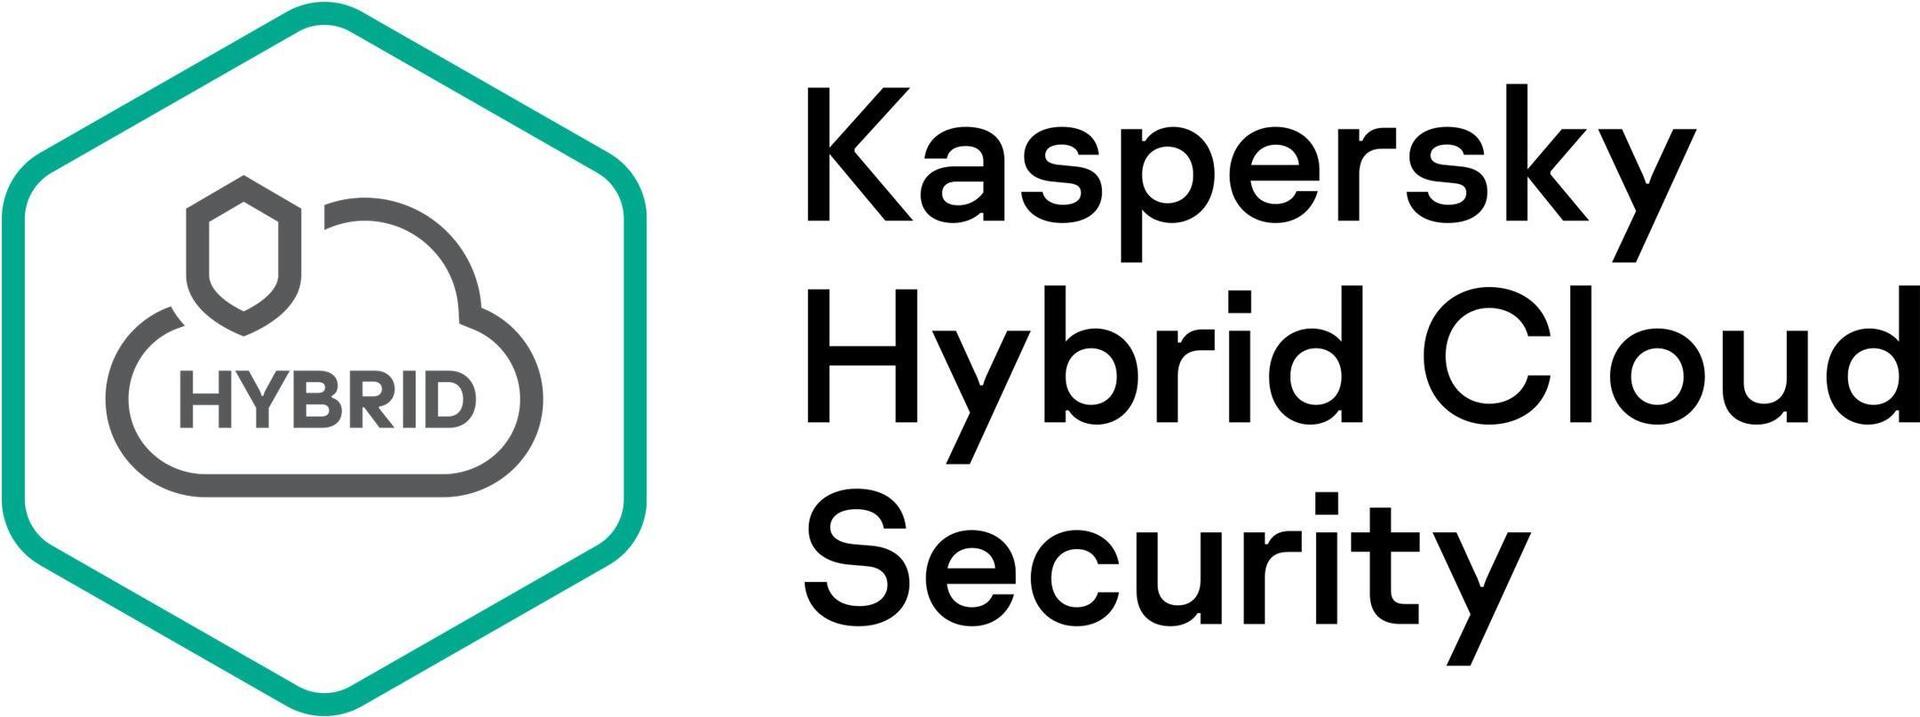 Kaspersky Hybrid Cloud Security Desktop (KL4155XARF9)